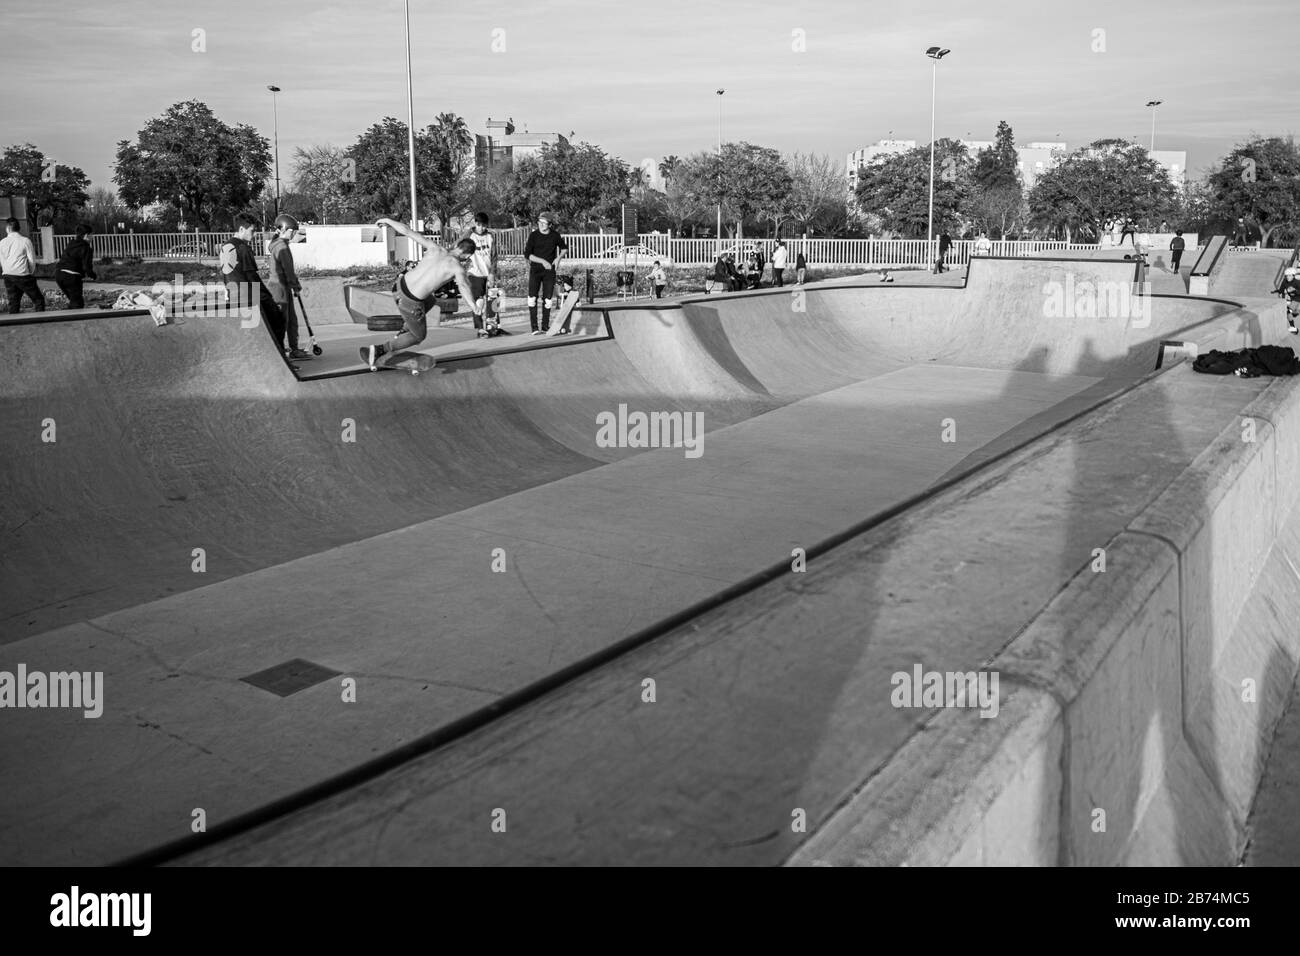 Photo en niveaux de gris d'un parc de skateboard Banque D'Images